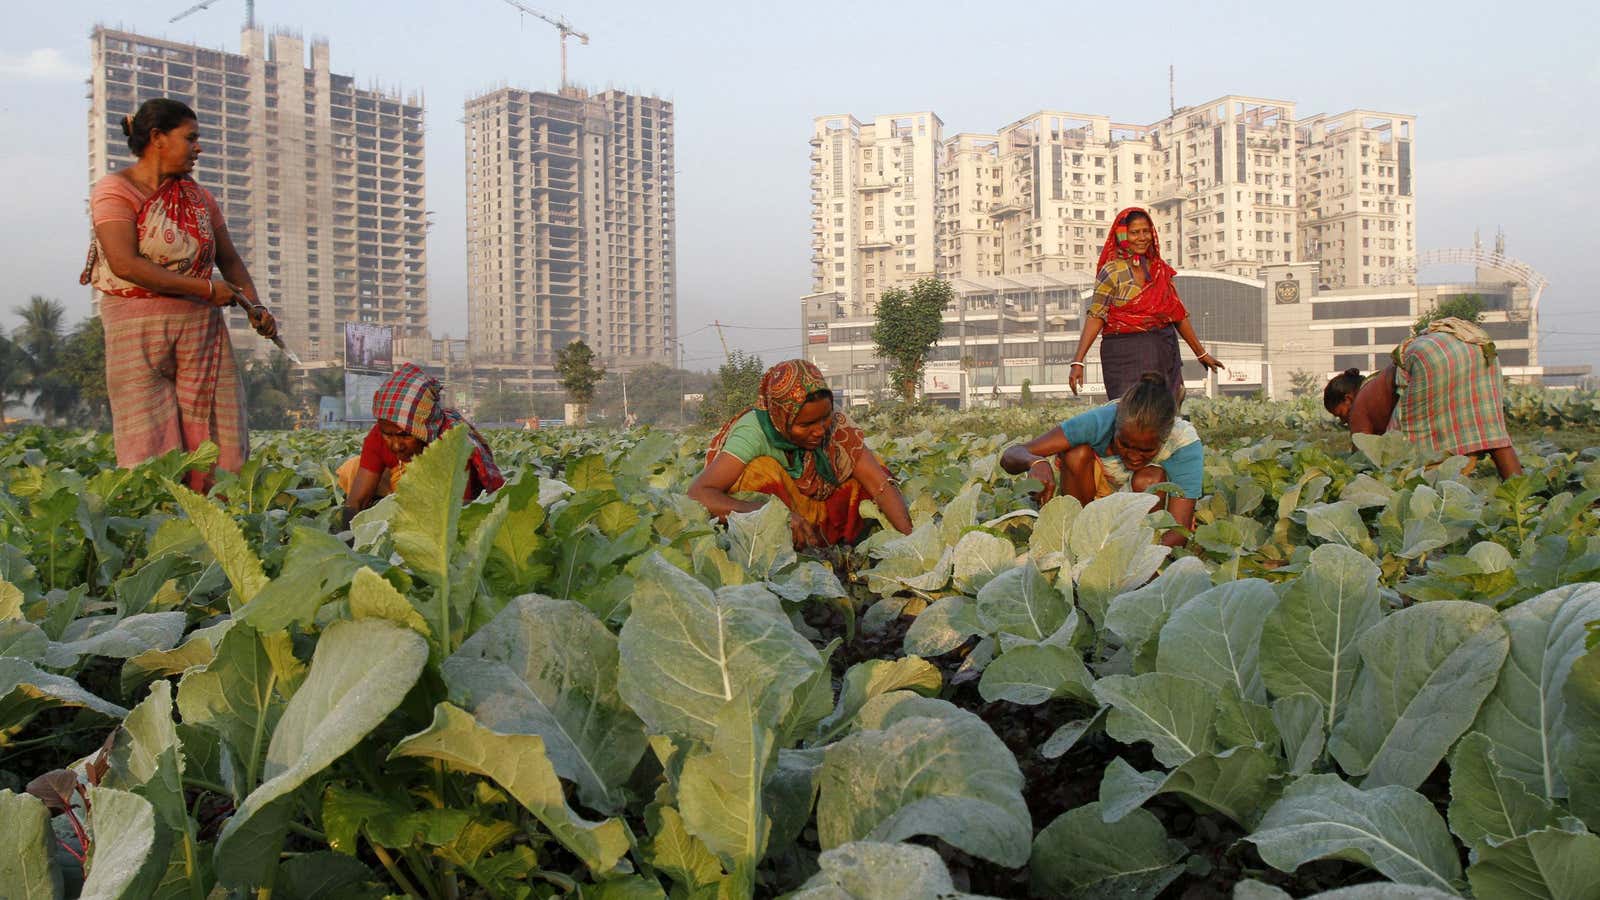 Urban farming, Kolkata-style.